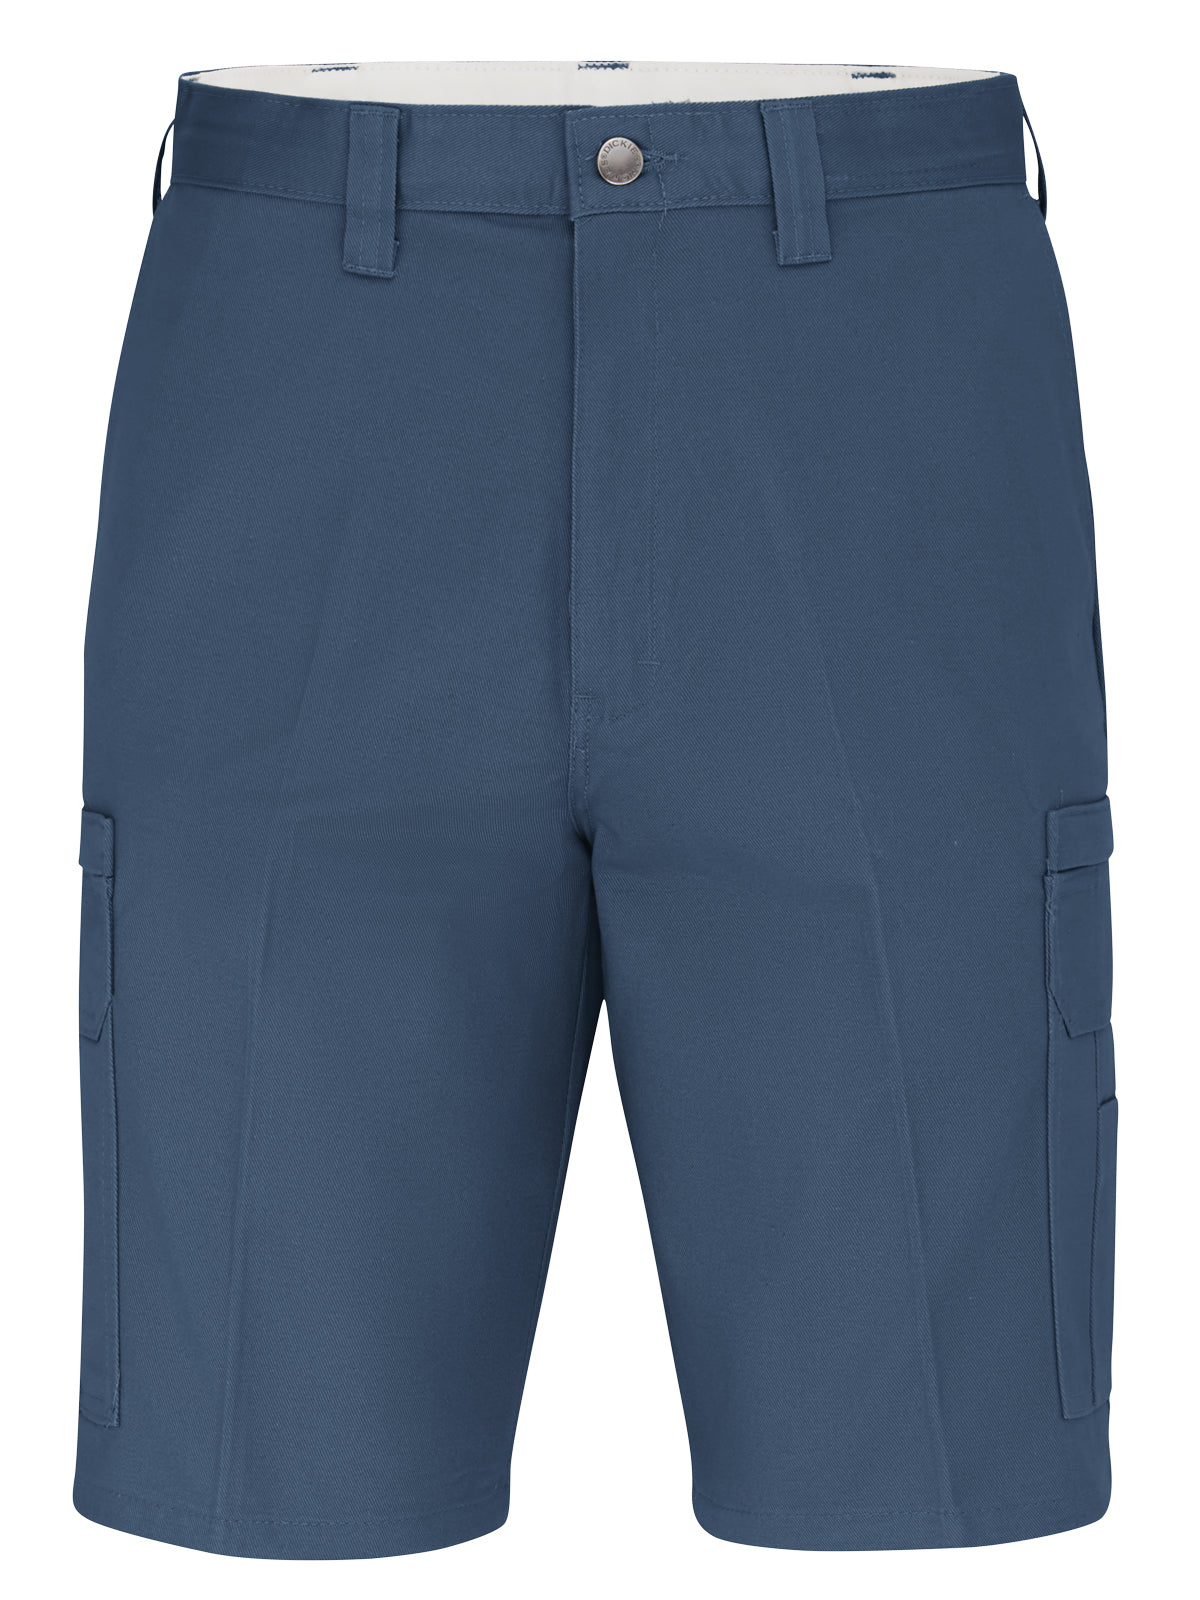 Men's 11" Industrial Cotton Cargo Shorts - LR33 - Dark Navy